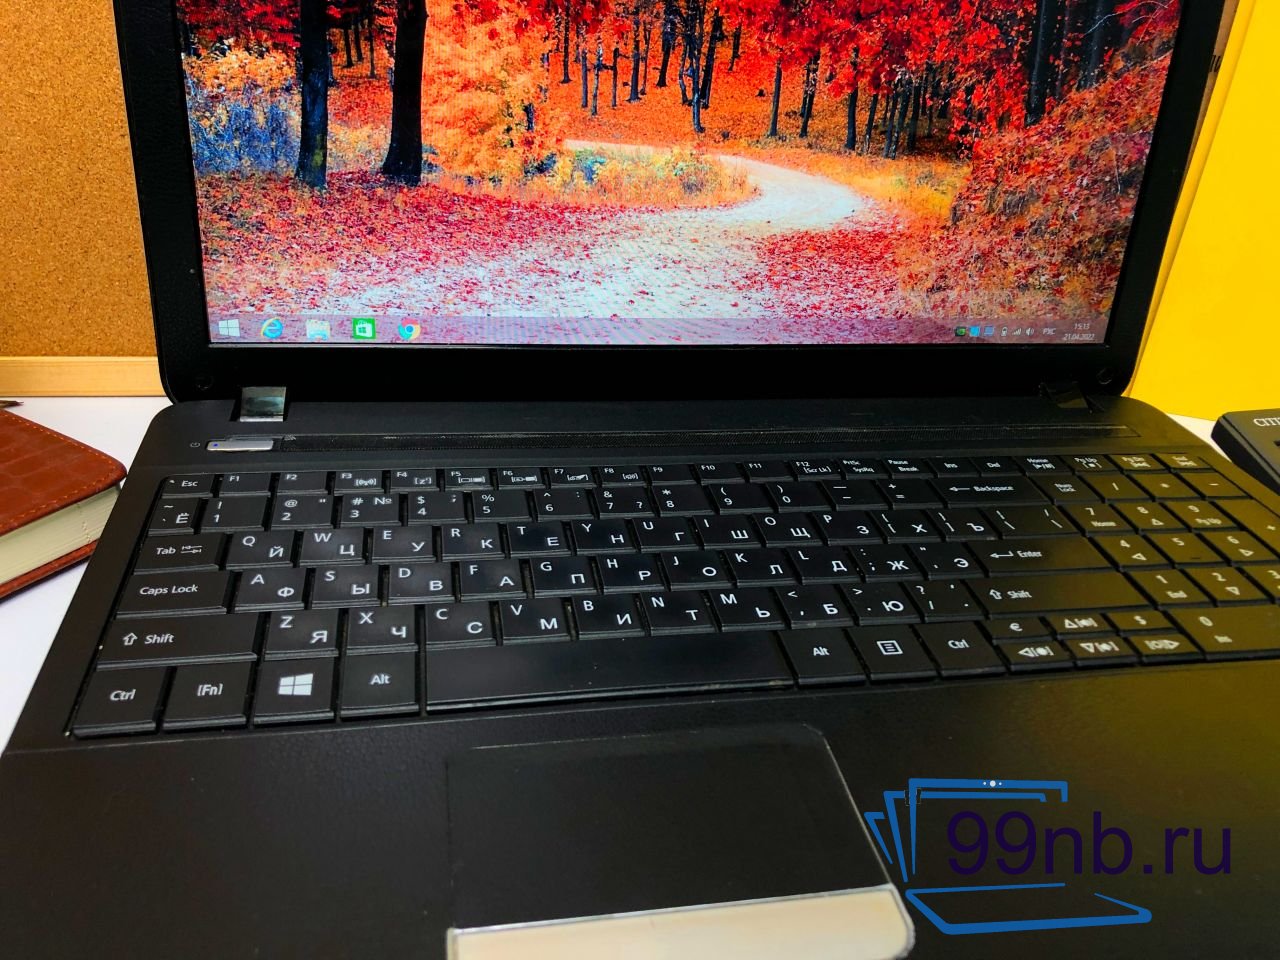  Ноутбук Acer Extensa для работы и учёбы